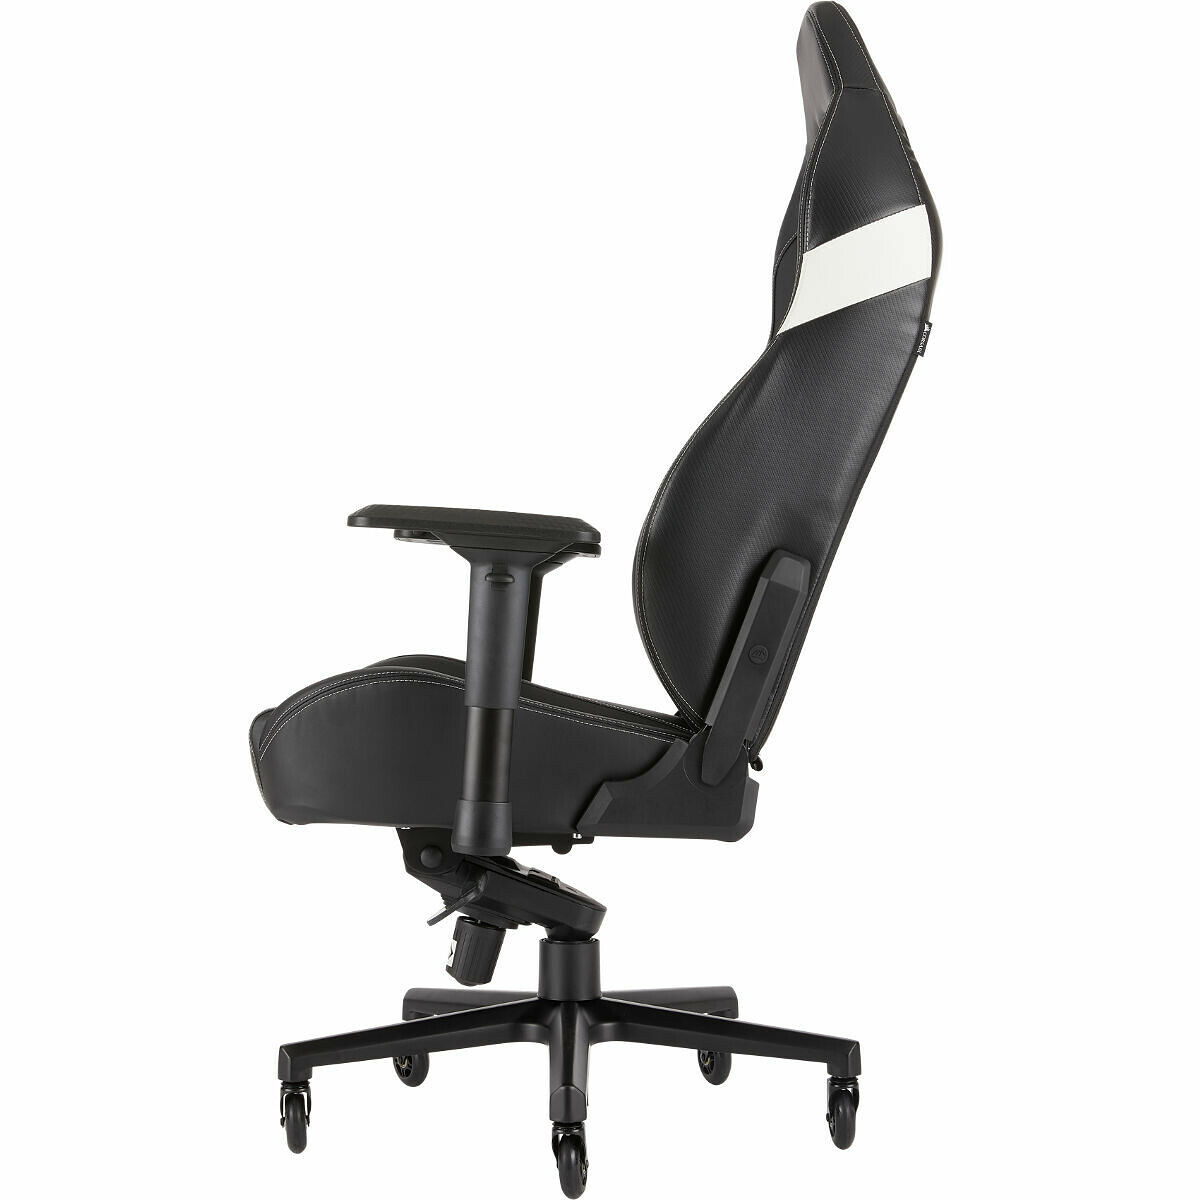 Chaise gaming CORSAIR T2 ROAD WARRIOR - Noir/Blanc / Chaise